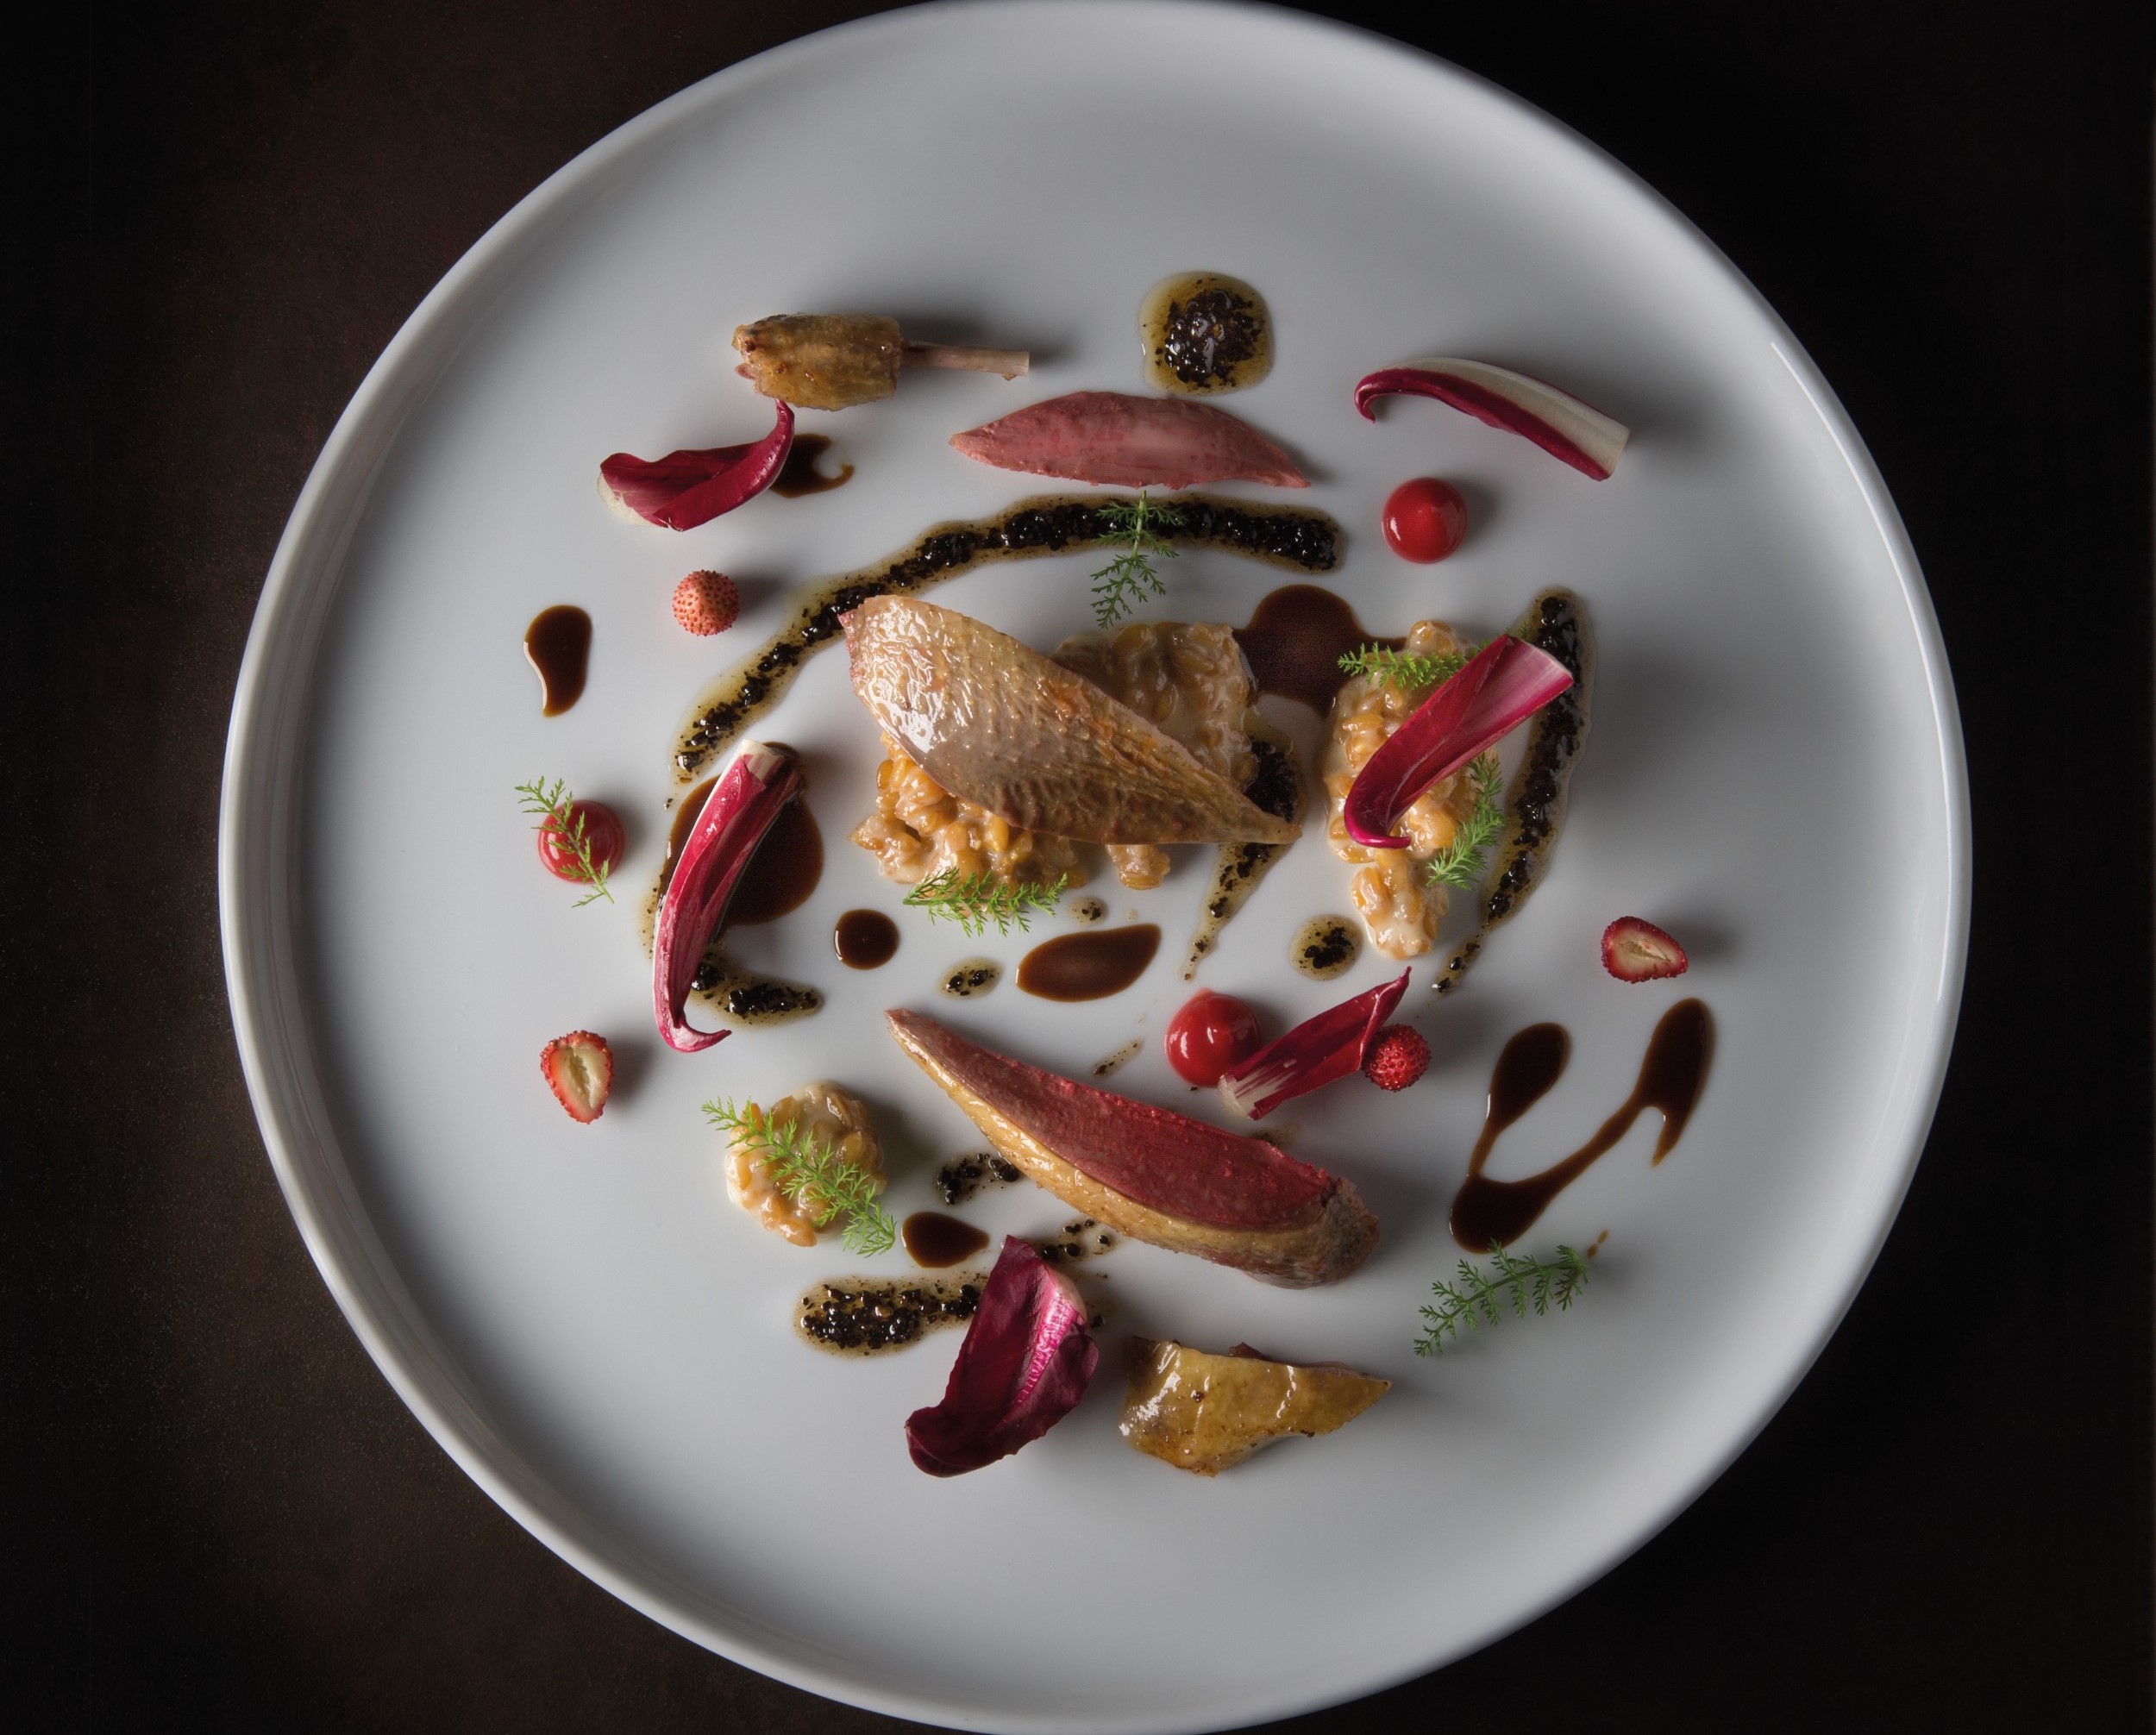 2019 年 Mirazur 的推薦主餐鴿肉佐野莓與西洋蓍，以產自自家農園的莓果與香草蔬菜，提供最鮮美的南法滋味。（photo by Eduardo Torres）